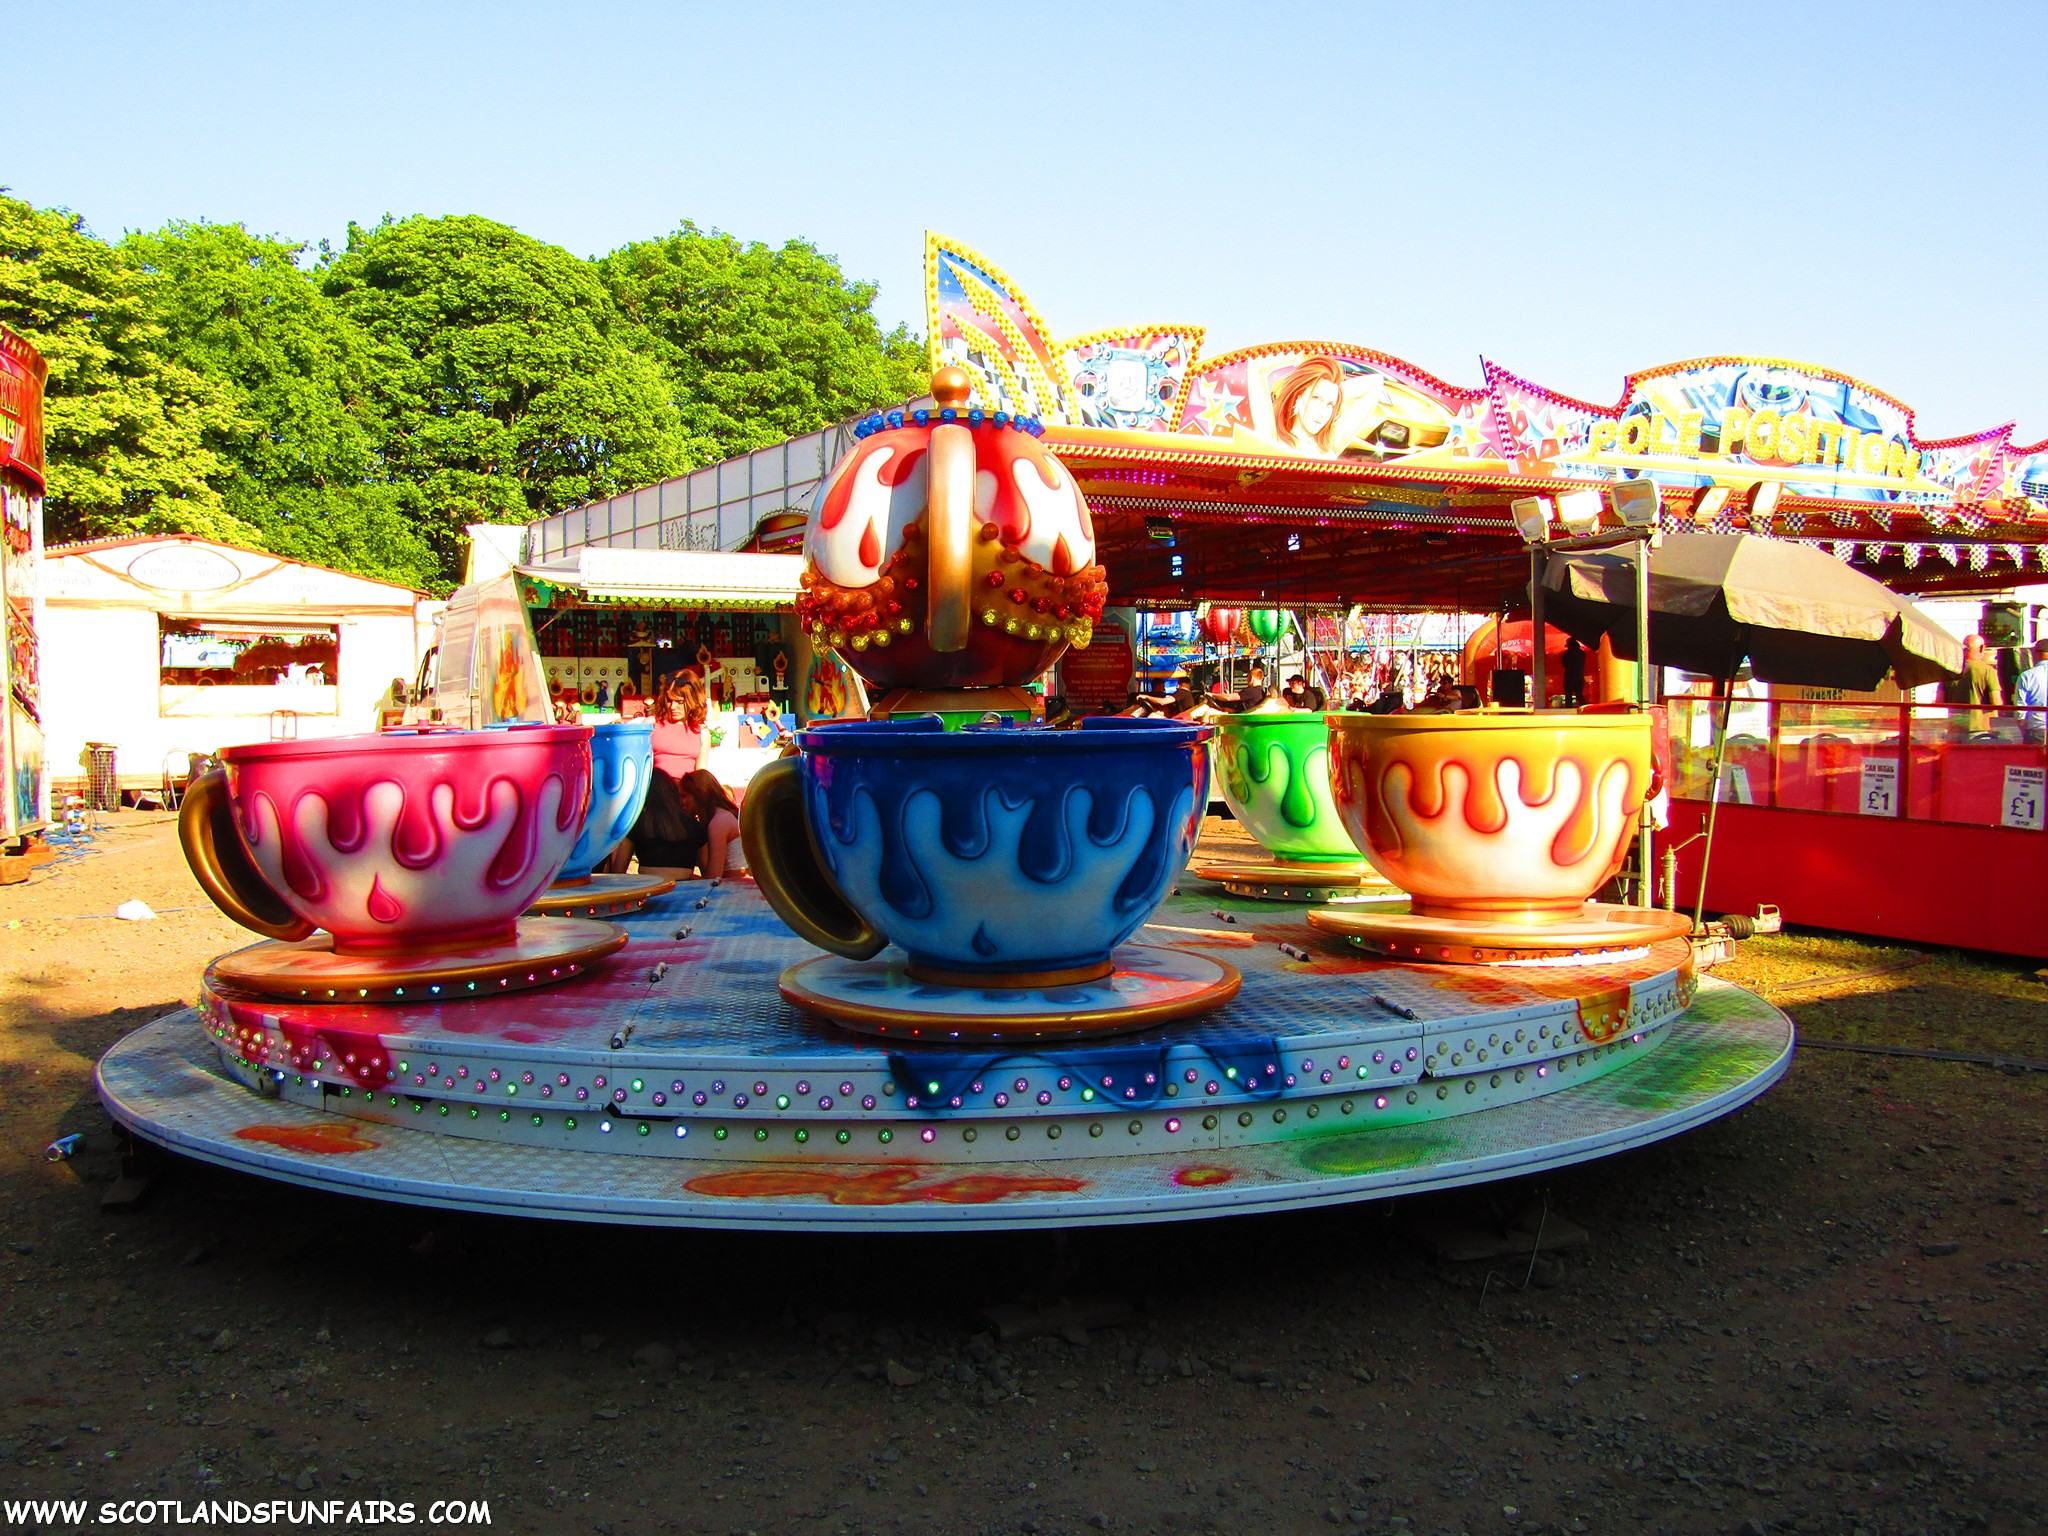 Phillip Paris's Teacups